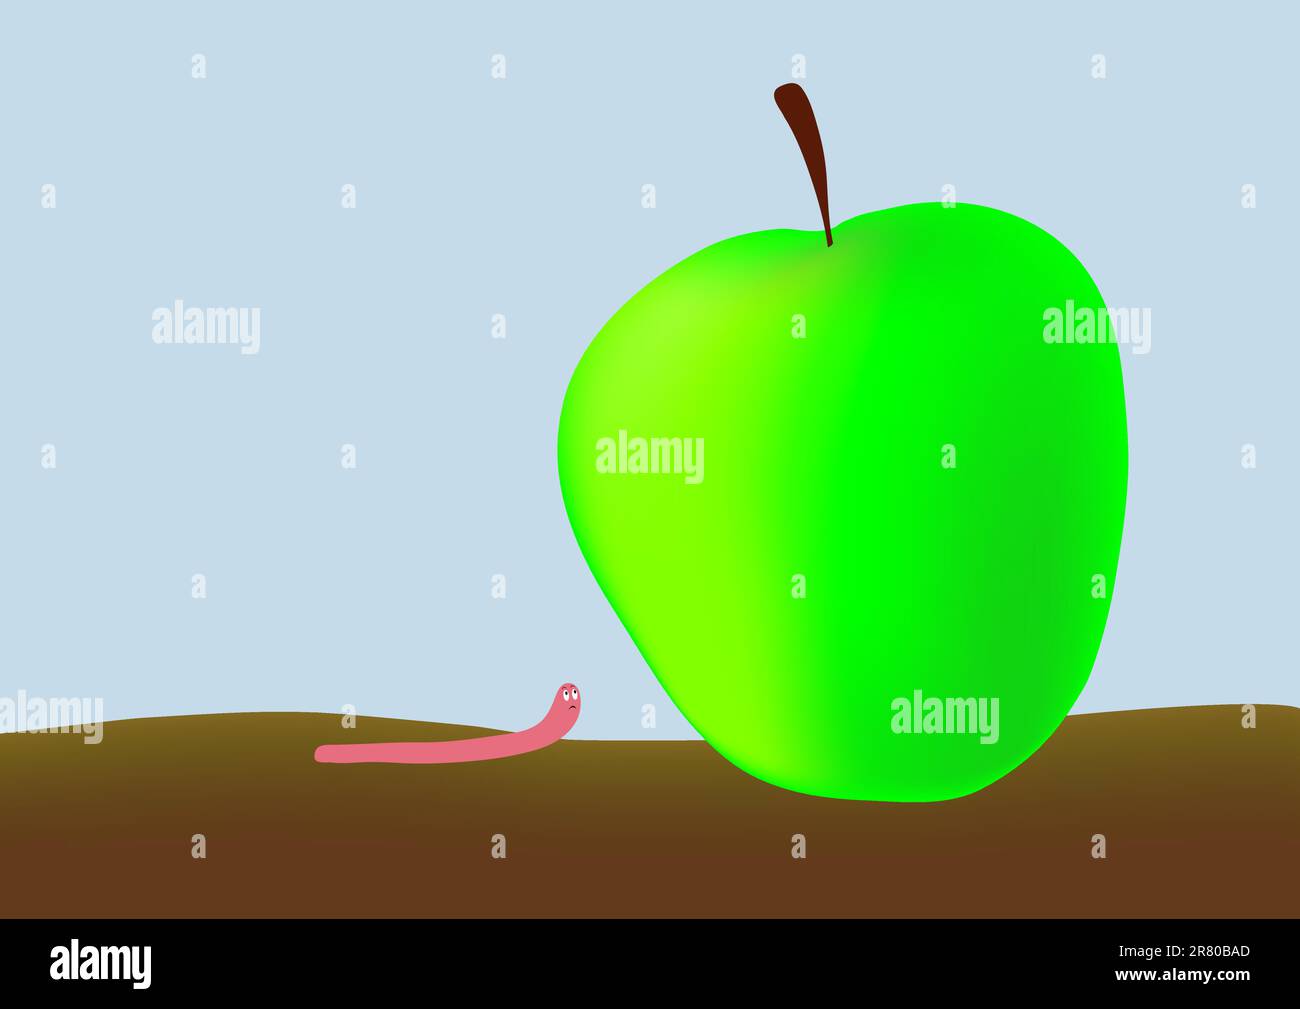 Piccolo verme e grande mela verde - mordere più di quanto si possa masticare - assumere troppo - mordere più di quanto si possa masticare. Questo file è vettoriale, può essere... Illustrazione Vettoriale